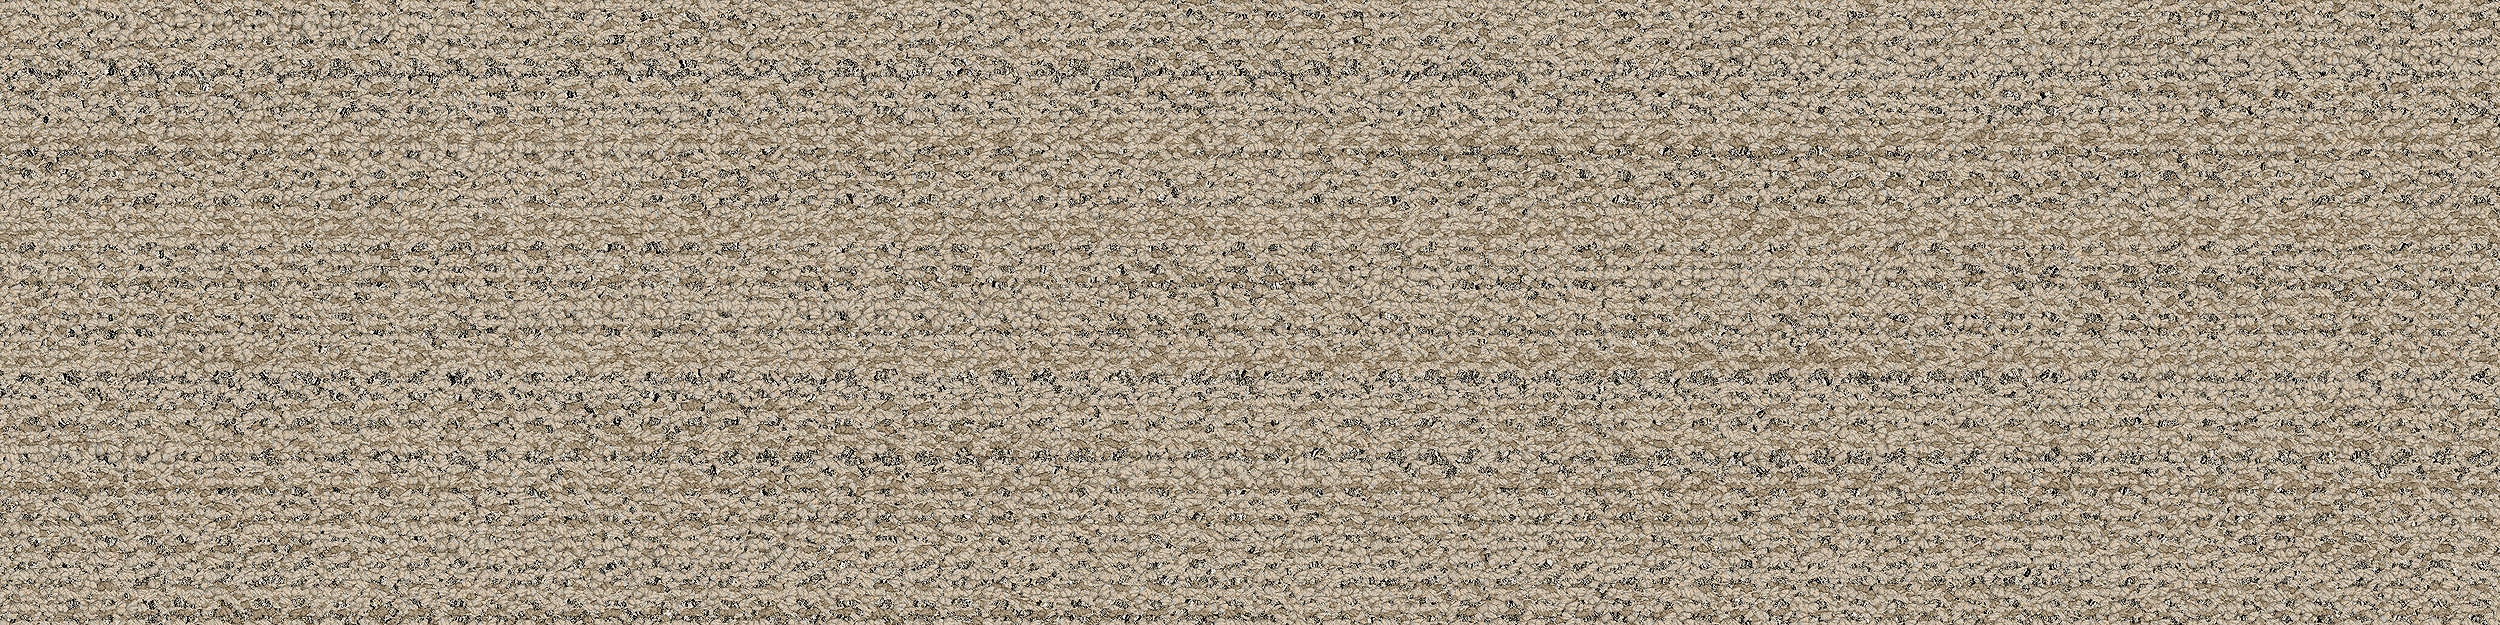 WW870 Carpet Tile In Raffia Weft imagen número 9